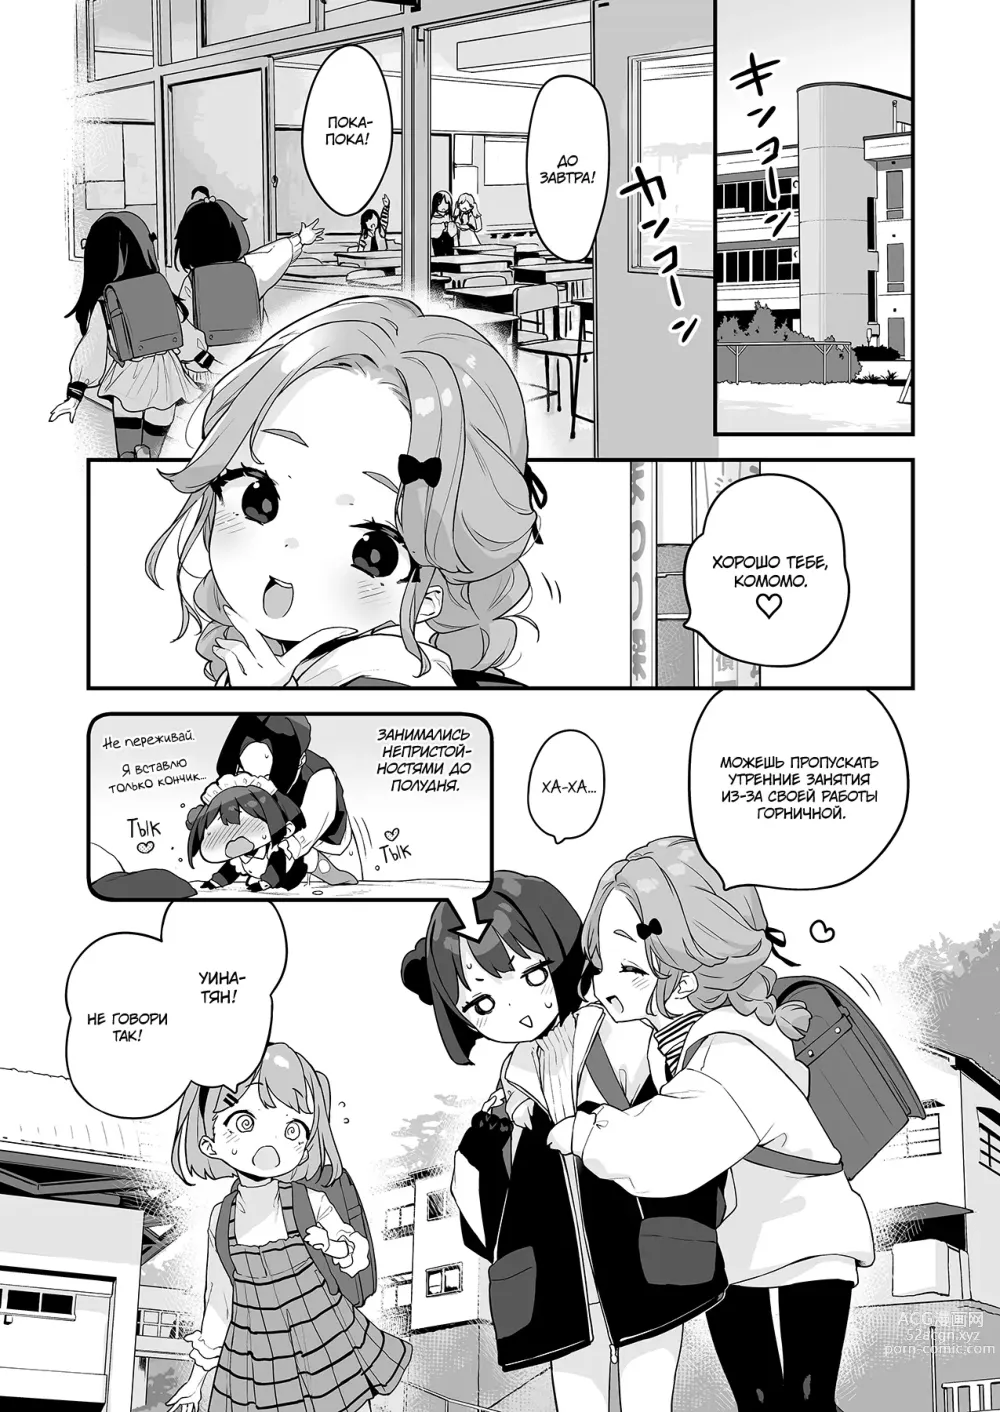 Page 7 of doujinshi Лоли-мейда Комомо, личная шлюшка хозяина